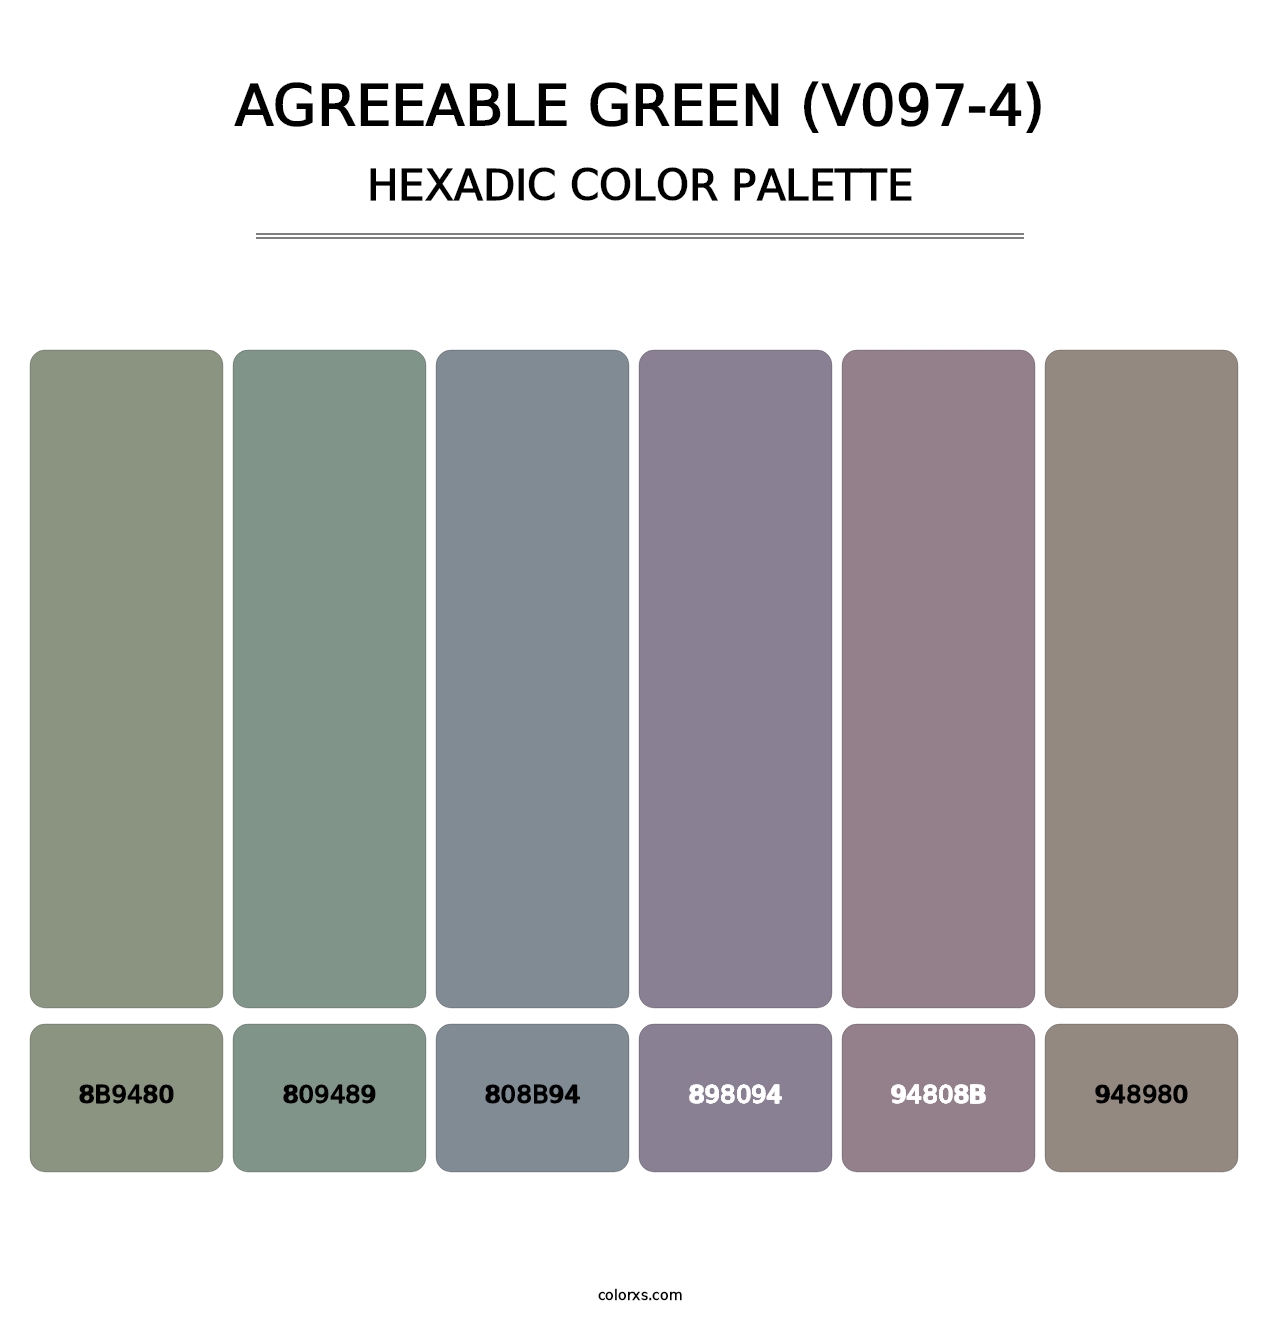 Agreeable Green (V097-4) - Hexadic Color Palette